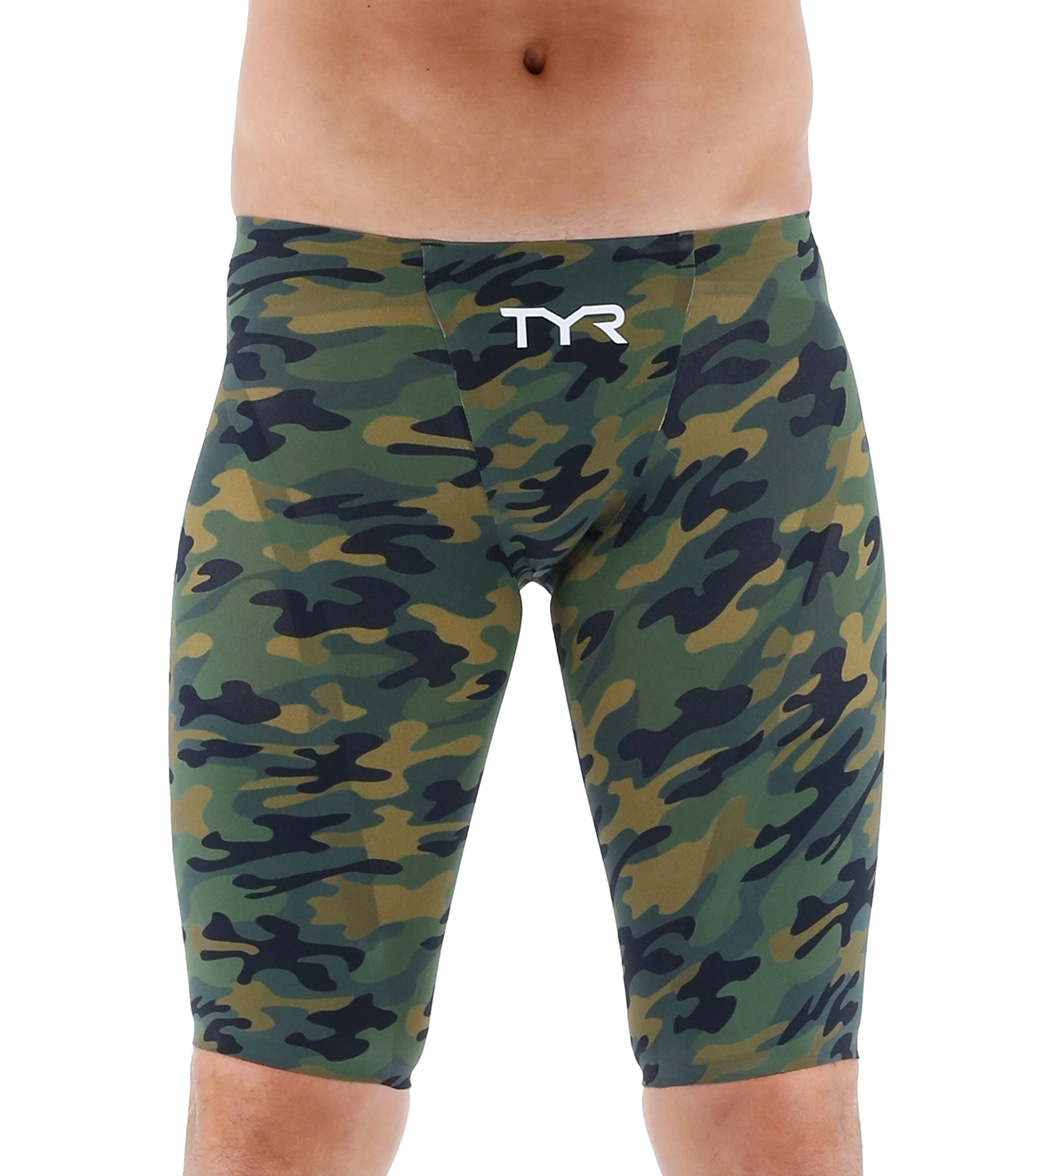 TYR Men's Venzo Camo Jammer Tech Suit Swimsuit - Olive 22 - Swimoutlet.com